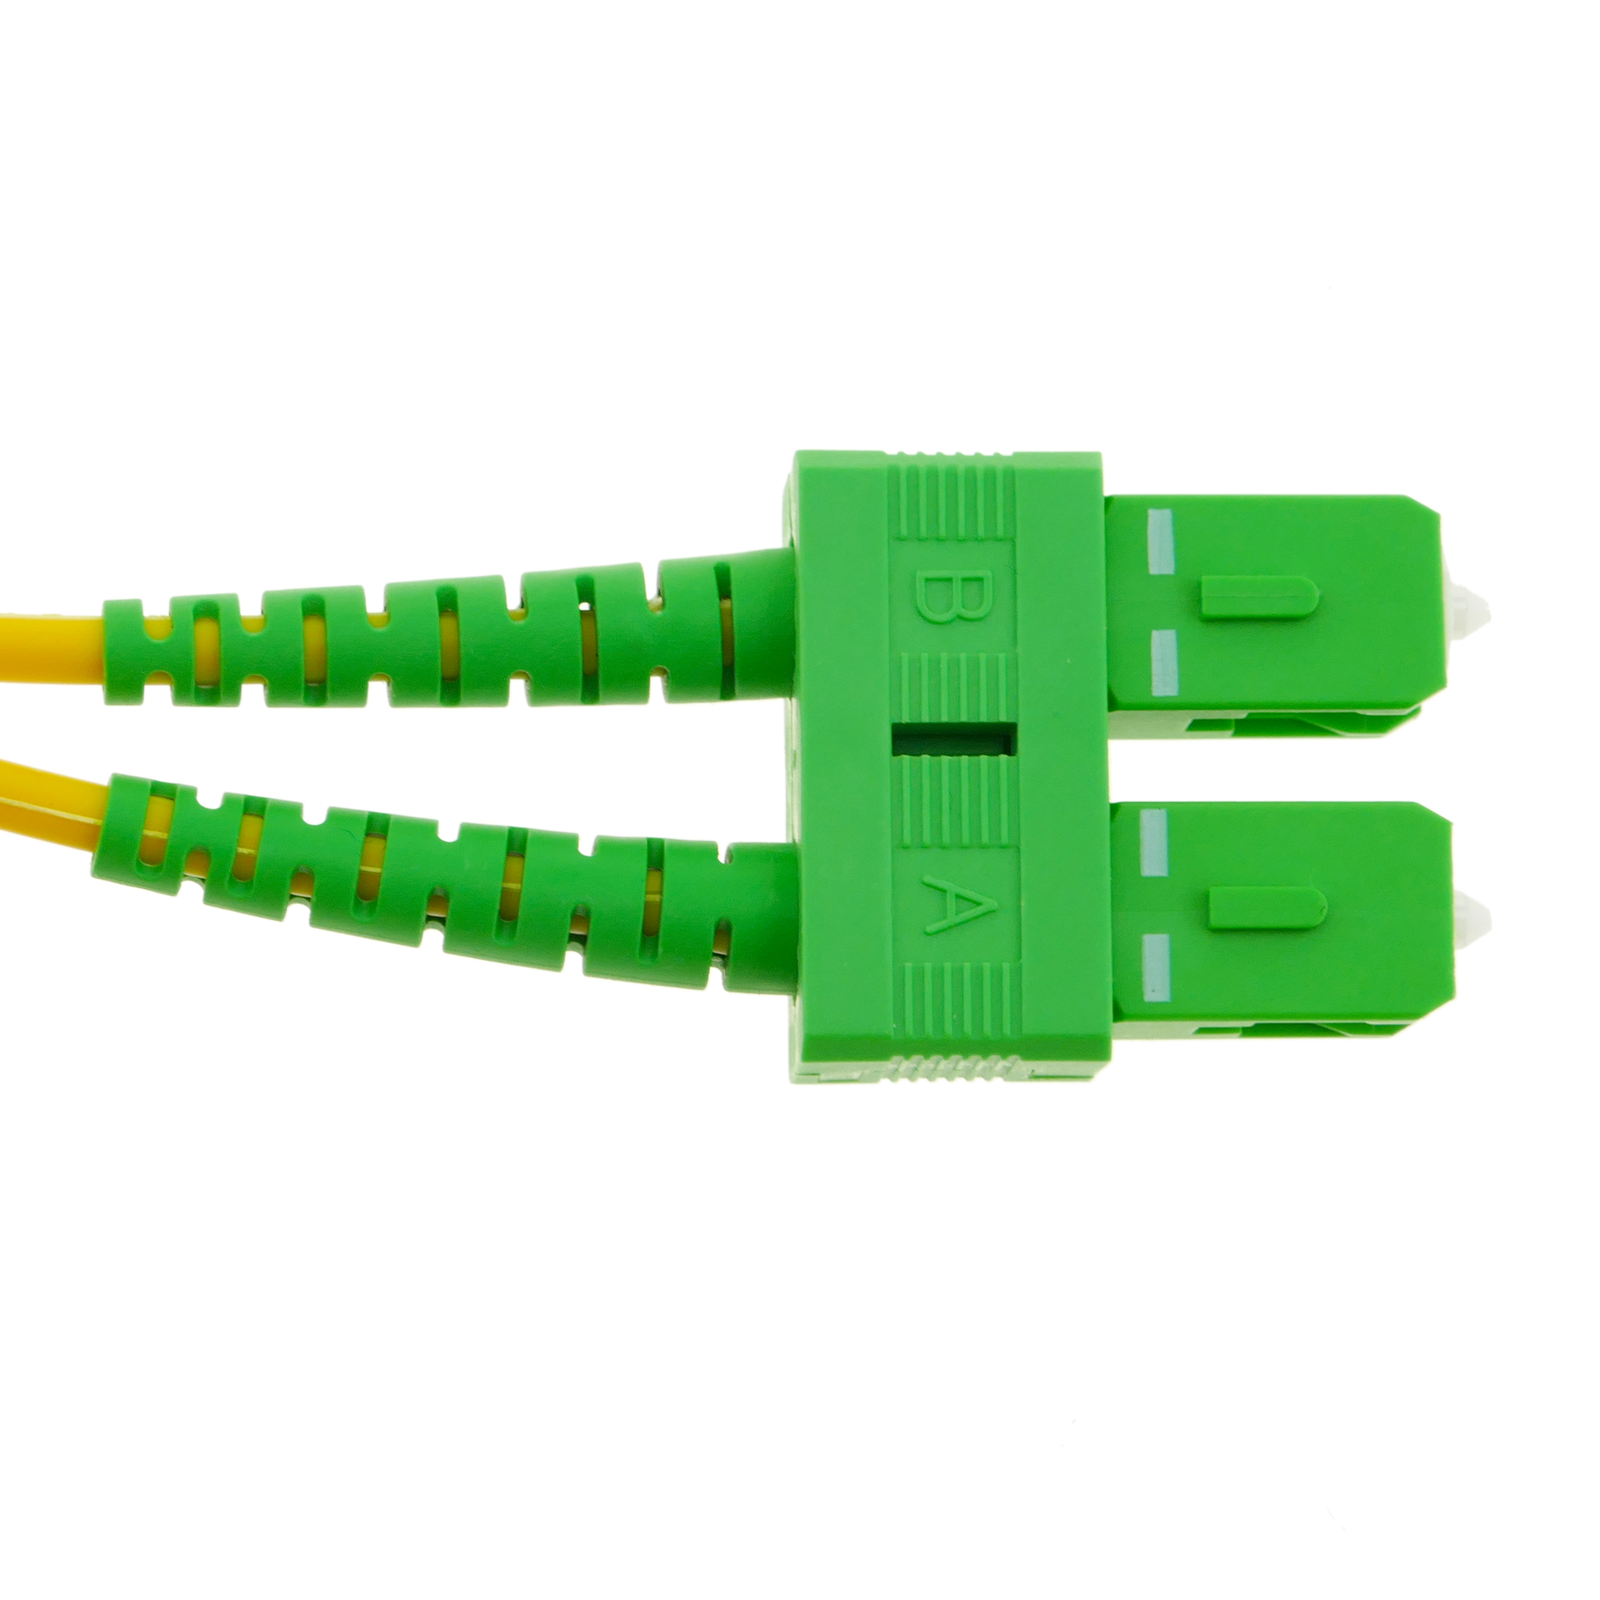 Latiguillo fibra óptica de base a router 3.0mm , 1metro